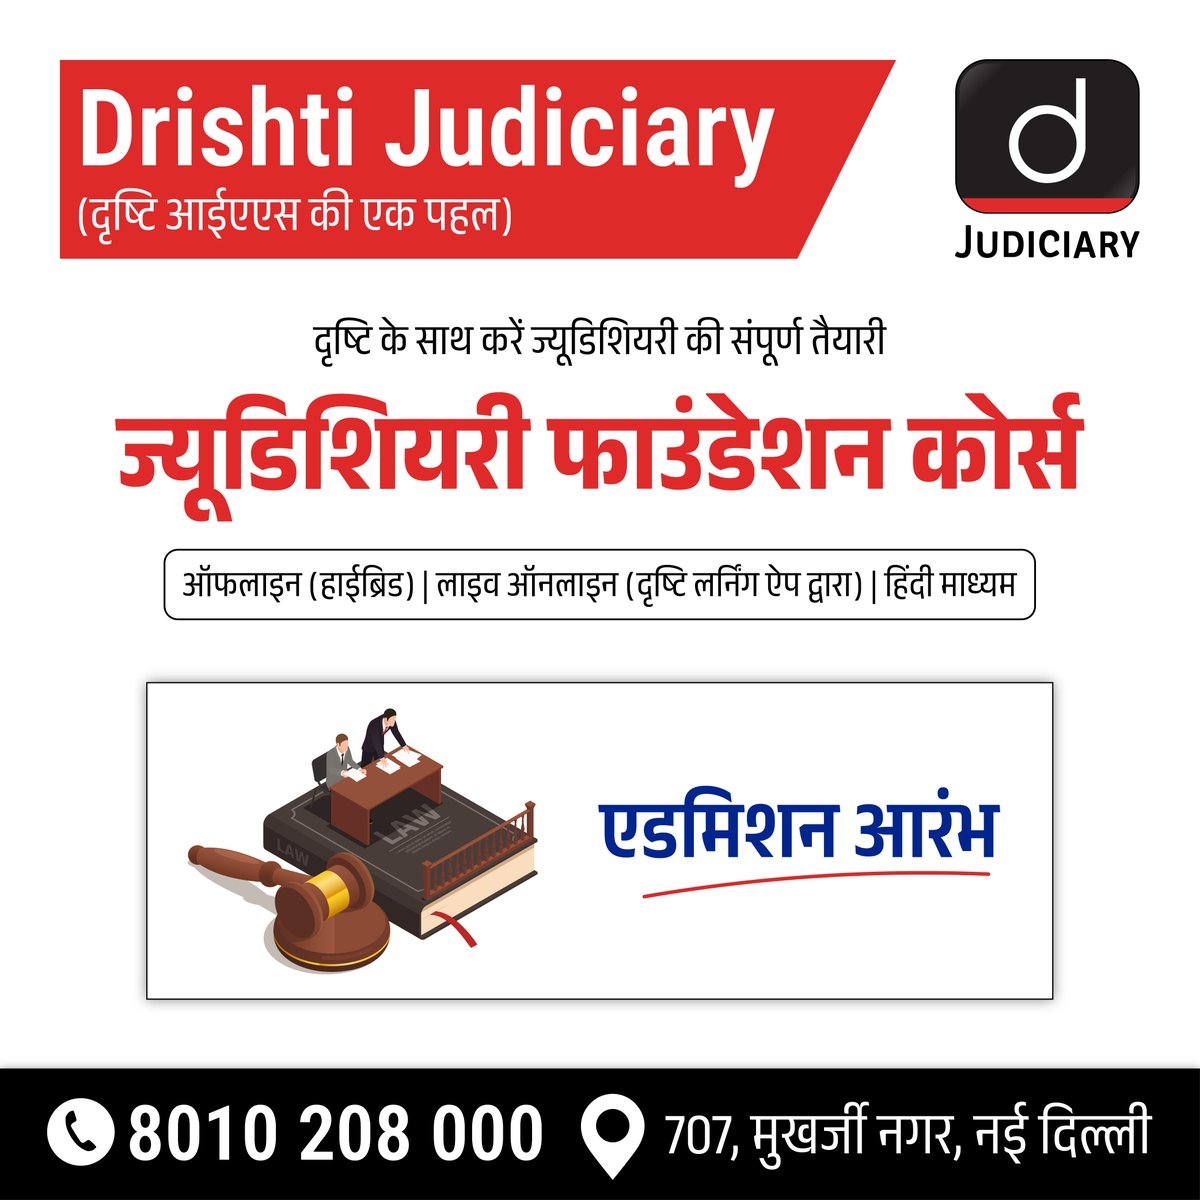 दृष्टि ज्यूडिशियरी फाउंडेशन कोर्स!
.
अपनी सीट बुक करने के लिये क्लिक करें: drishti.xyz/Registration-J…
.
विस्तृत जानकारी के लिये कॉल बैक फॉर्म भरें: drishti.xyz/Callback-Judic…

#JudicialServices #Foundation #Law #LawStudents #IndianJudiciary #LegalStudies #Constitution #DrishtiJudiciary